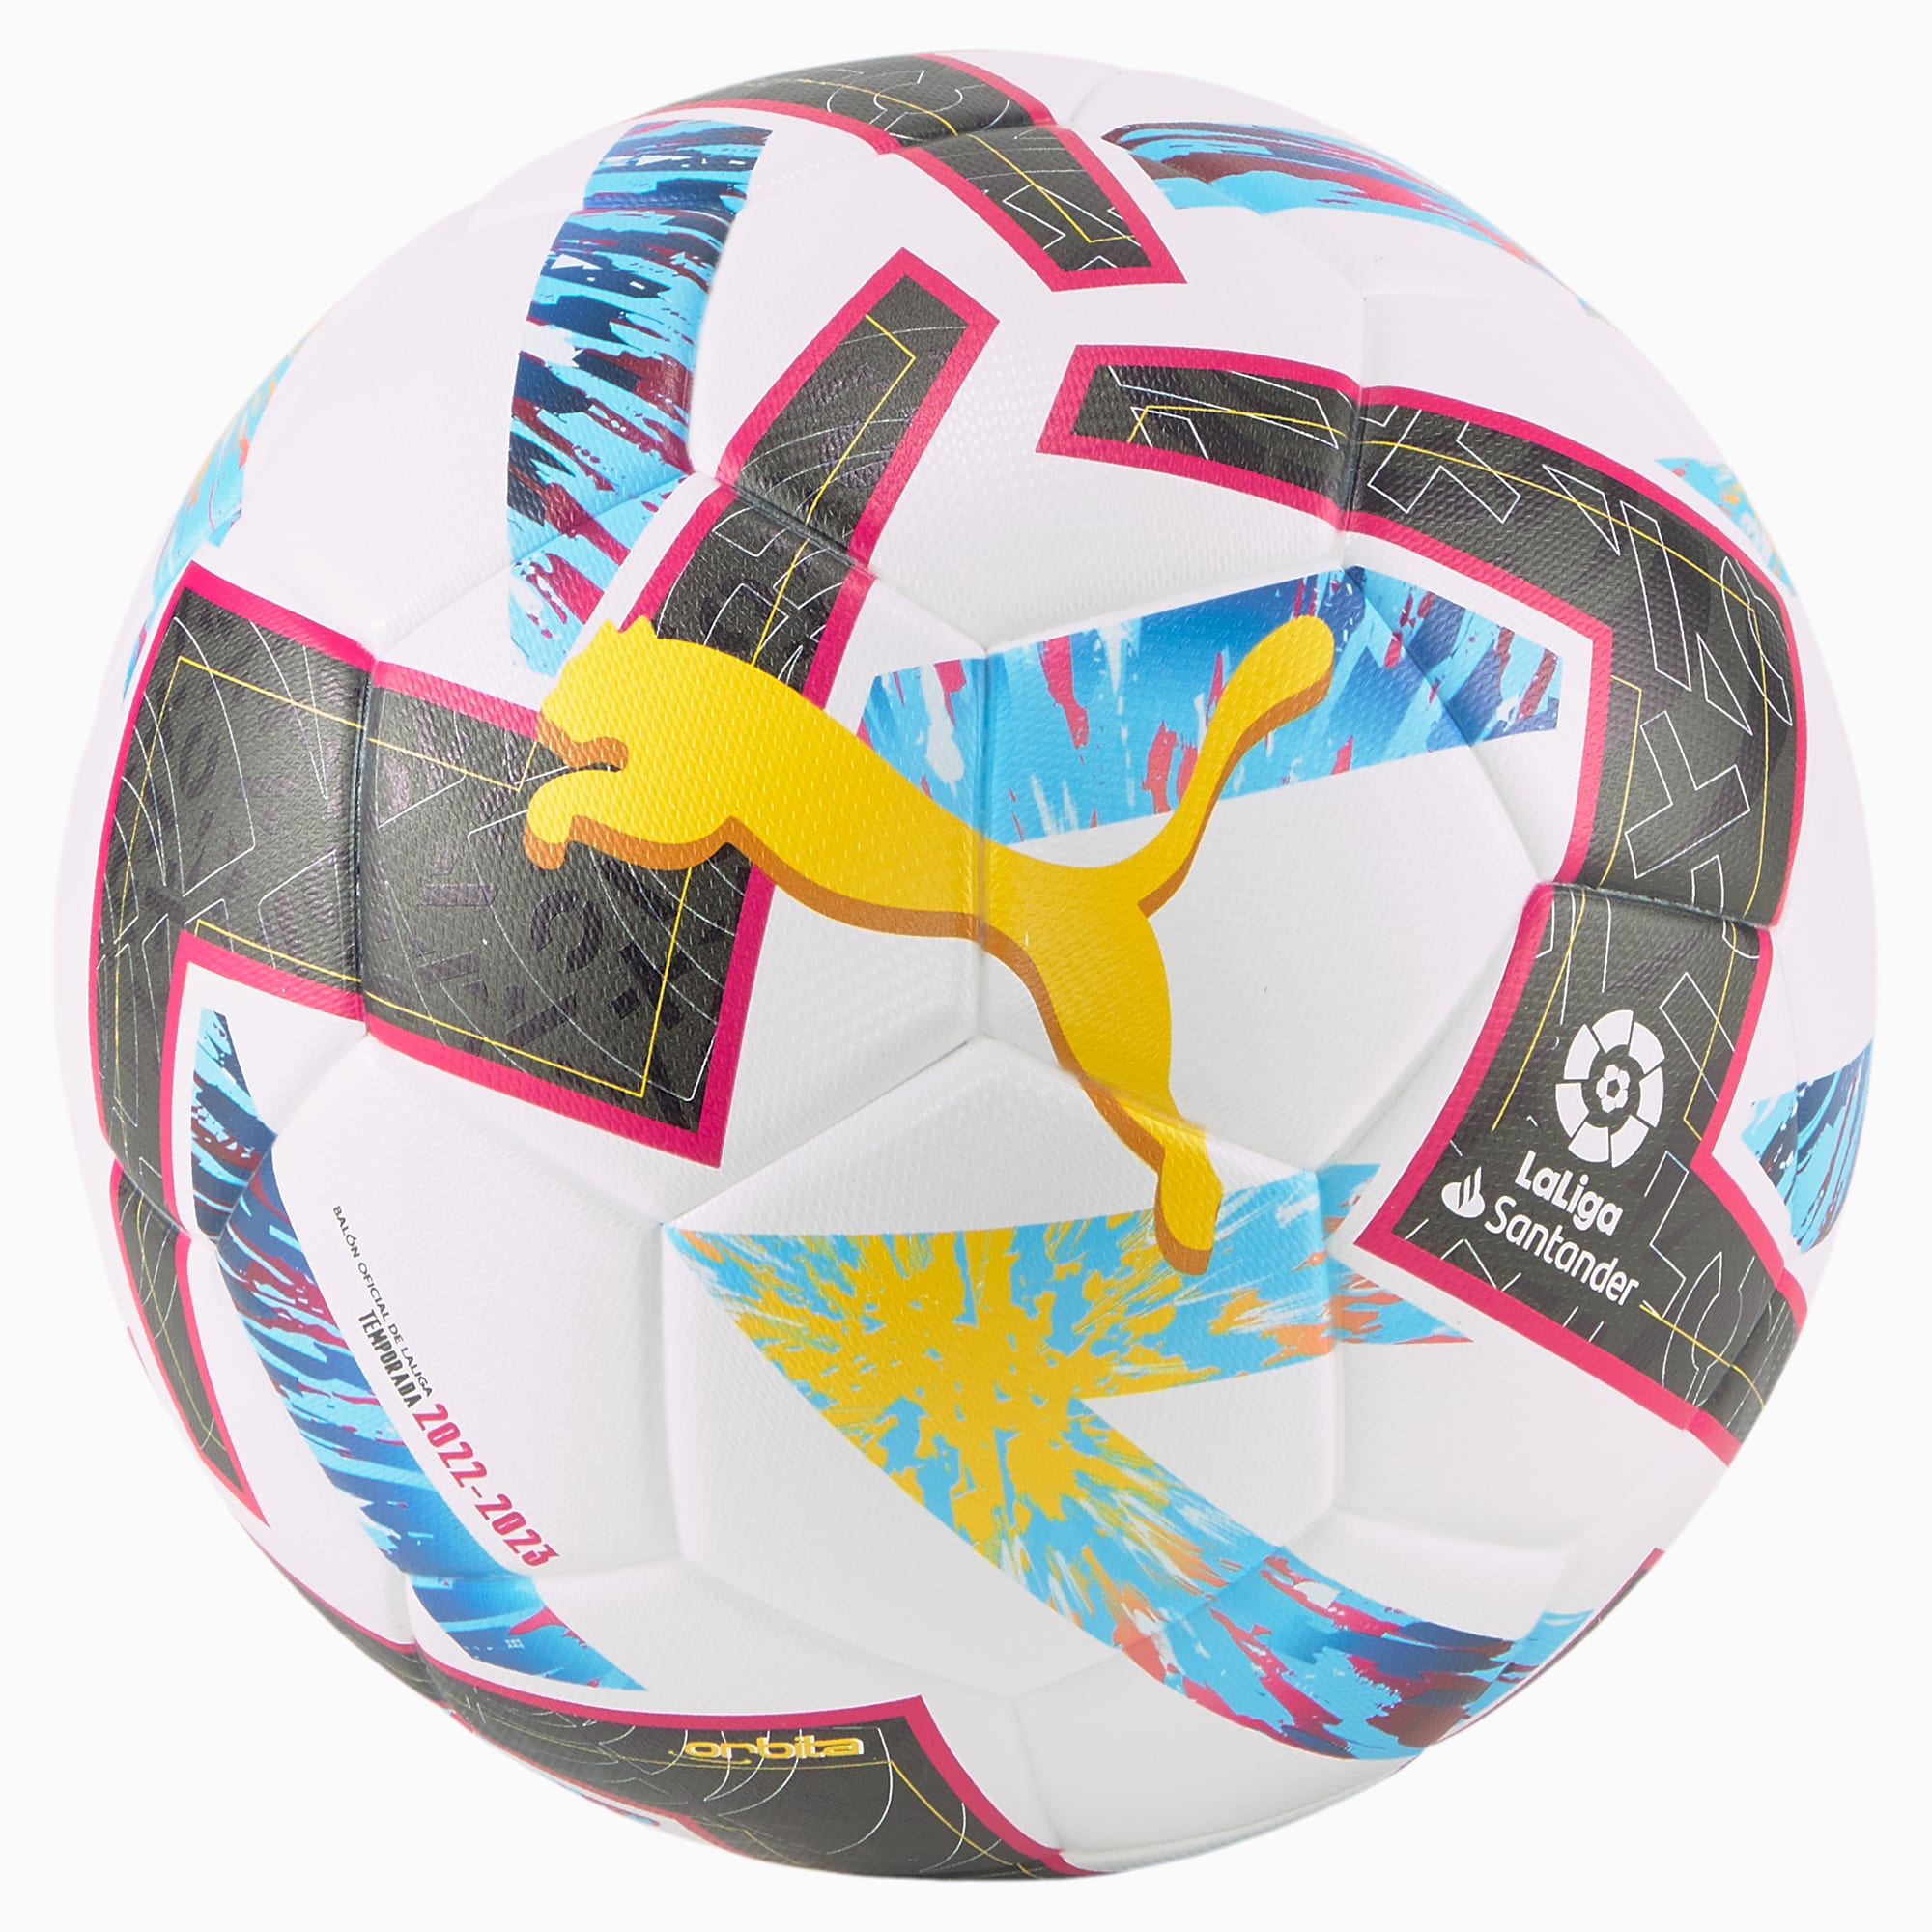 Liga FUTVE on X: ⚽ • ¡Este será el balón 𝐎𝐅𝐈𝐂𝐈𝐀𝐋 de la  #Temporada2021 de nuestra #LigaFUTVE! ⁣ ⁣ ✓ • Aprobado por FIFA con el  sello Quality Pro.⁣ ✓ • Están